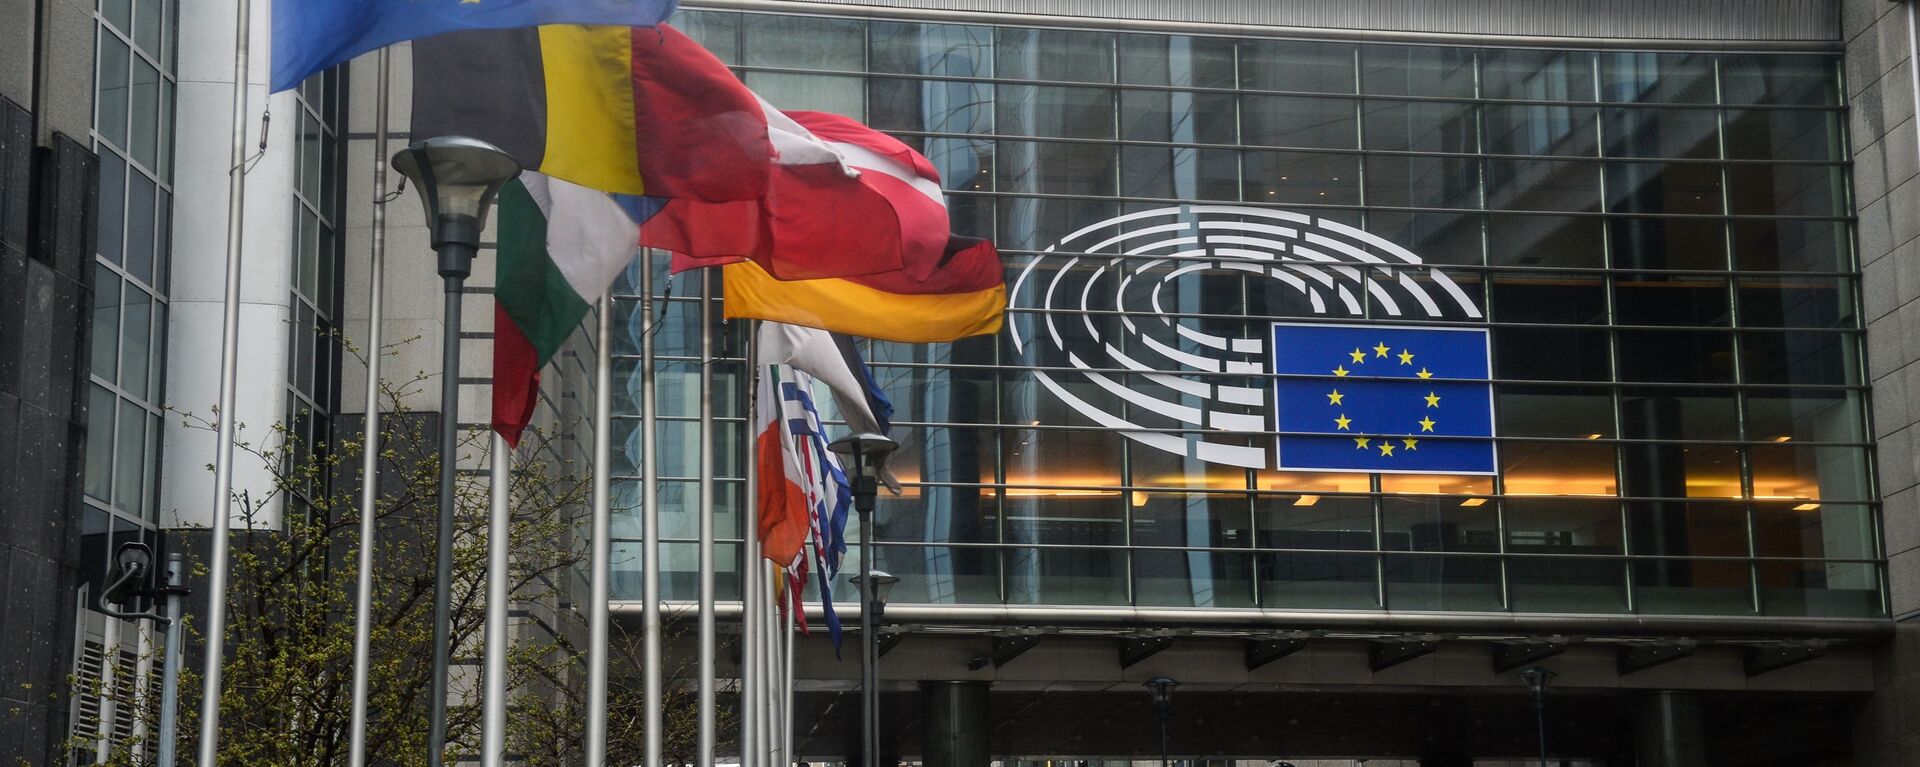 Sede del Parlamento Europeo en Estrasburgo - Sputnik Mundo, 1920, 11.04.2021